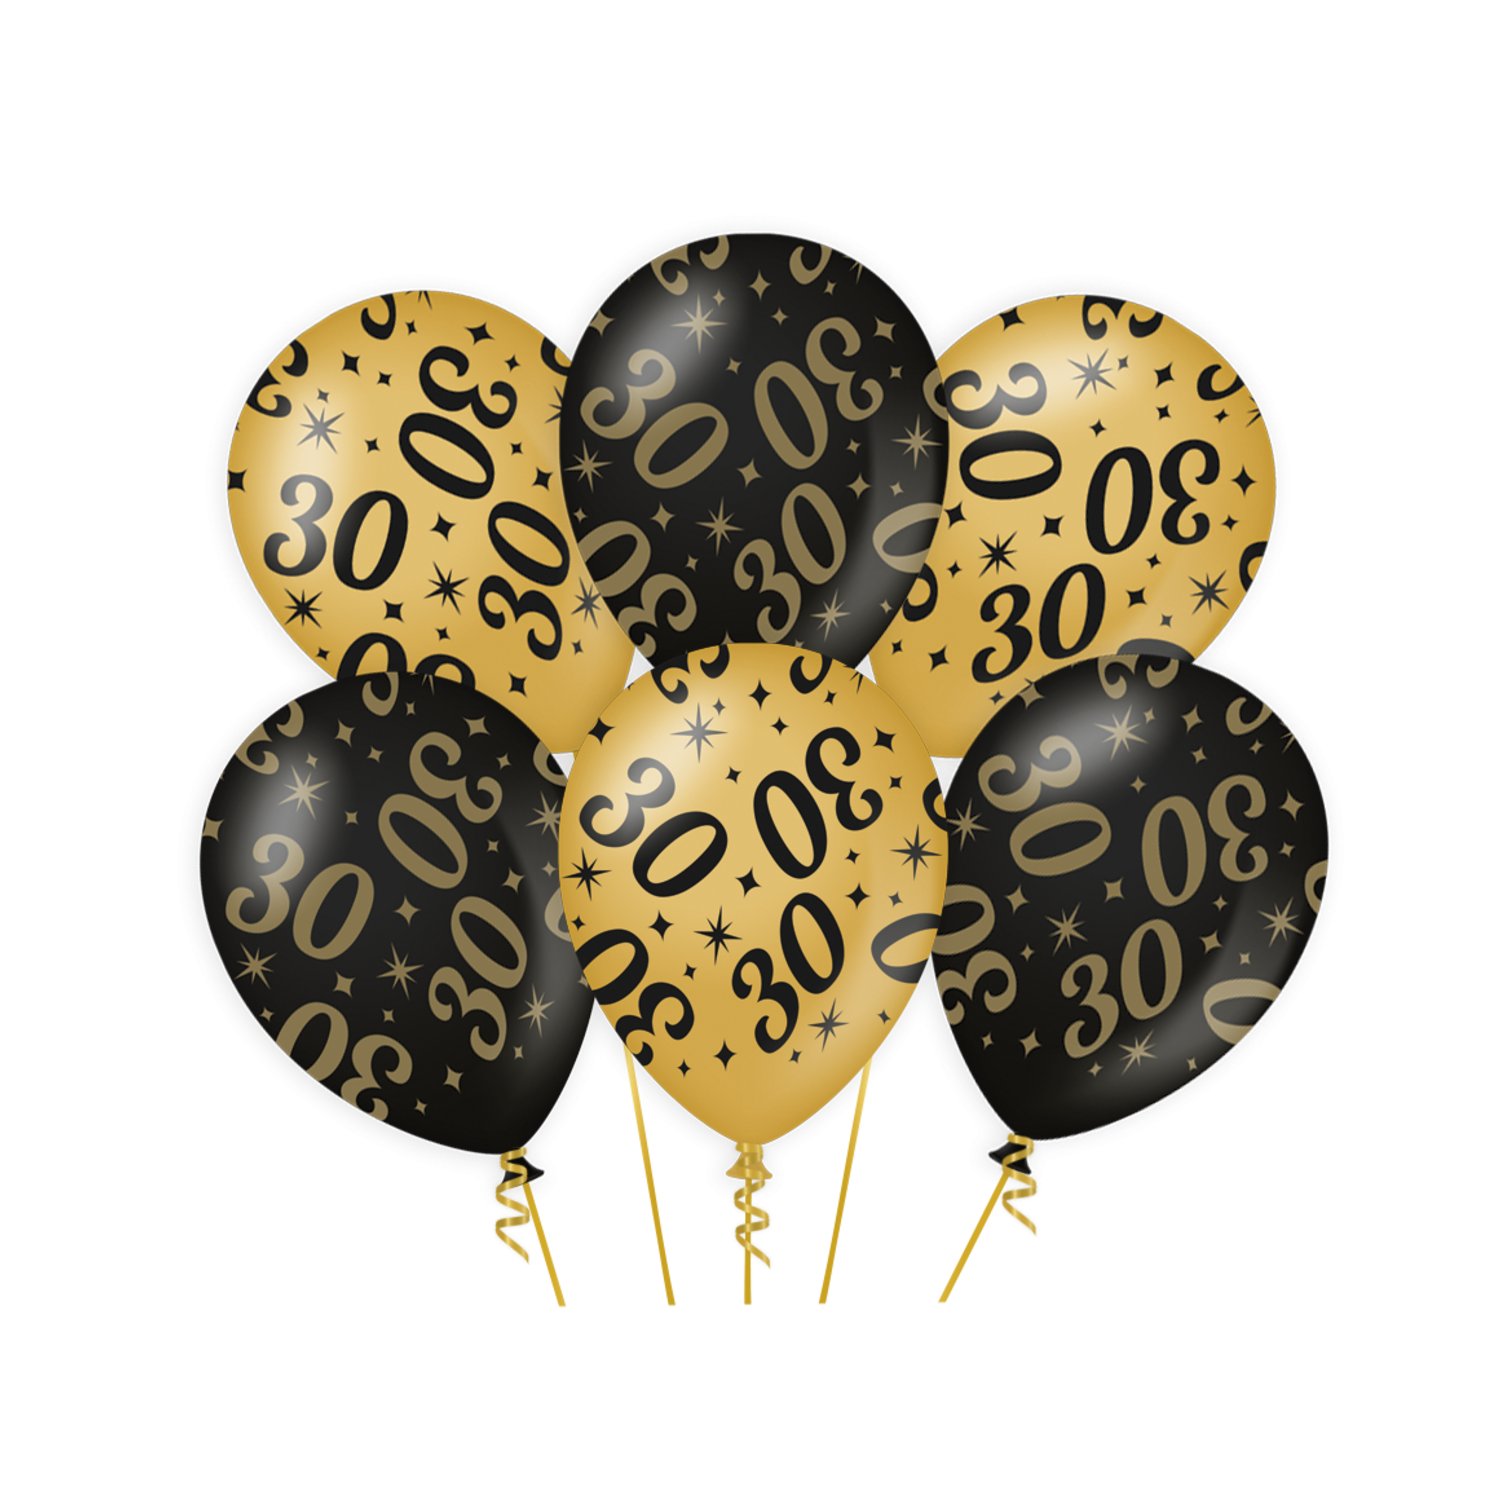 Ballons 30 ans or noir 30cm 6pcs - Partywinkel